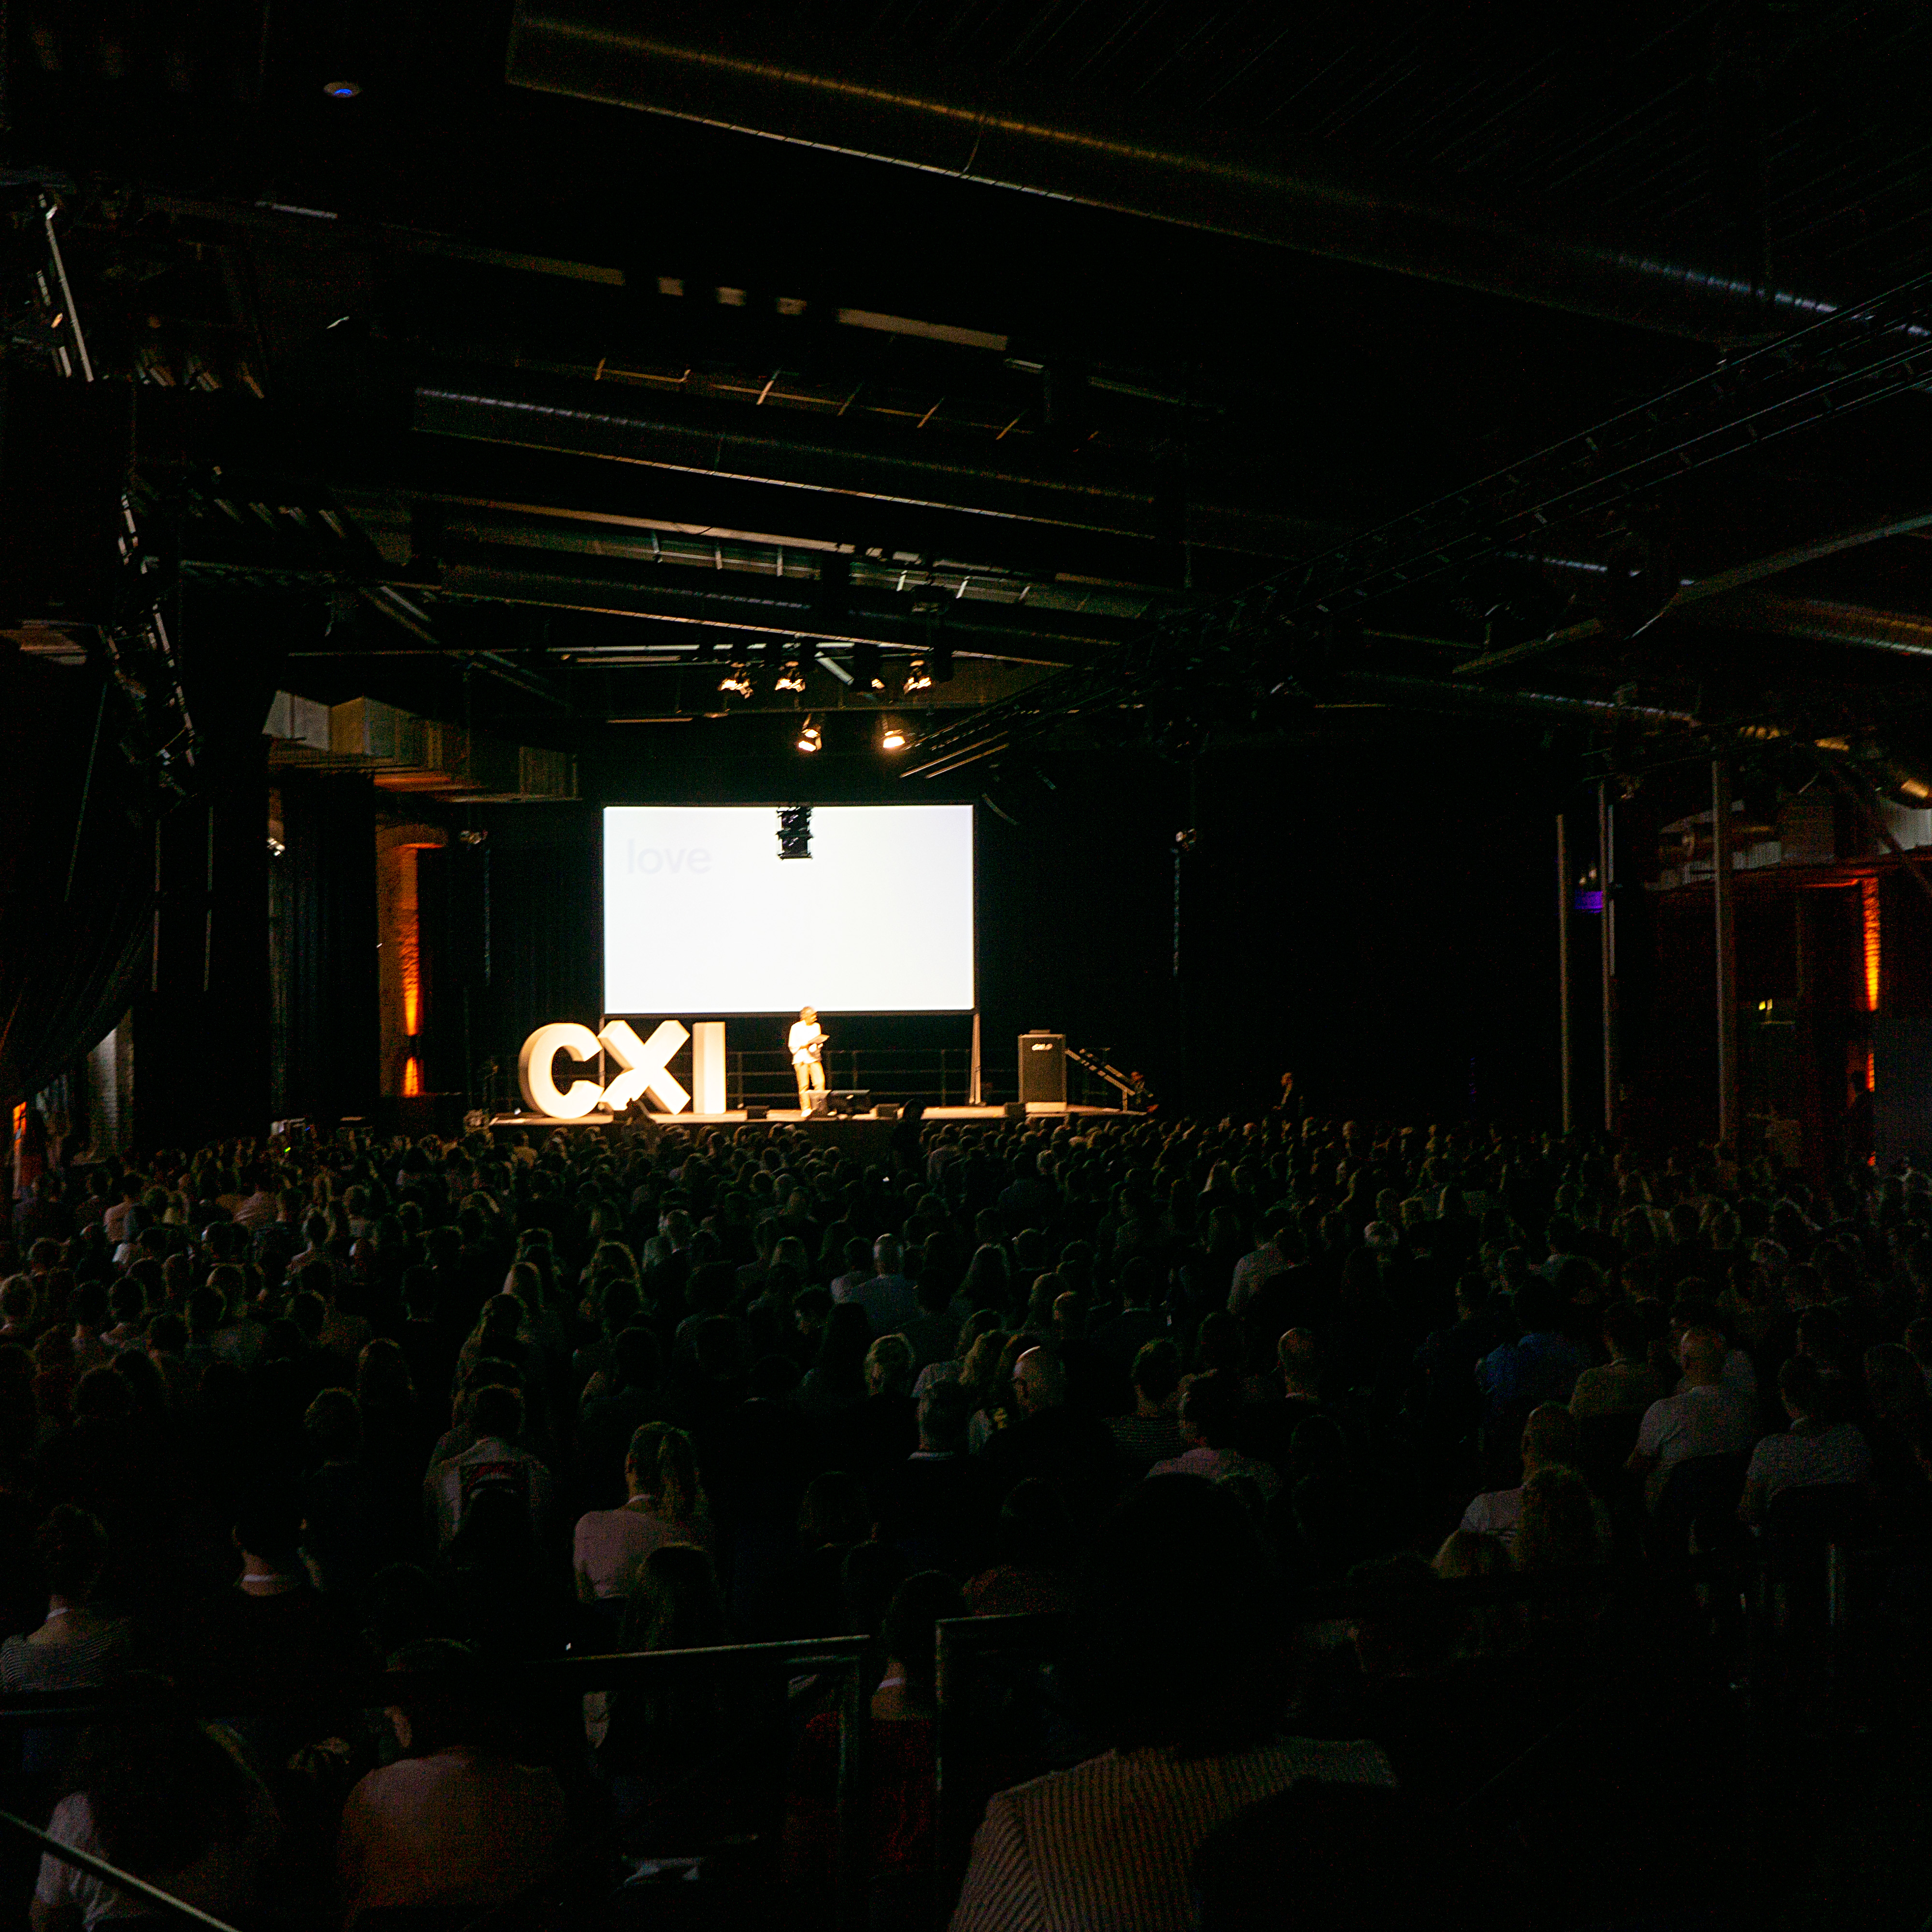 Ein vollbesetzter, dunkler Saal mit einer hell erleuchteten Bühne bei der CXI-Konferenz in Berlin.